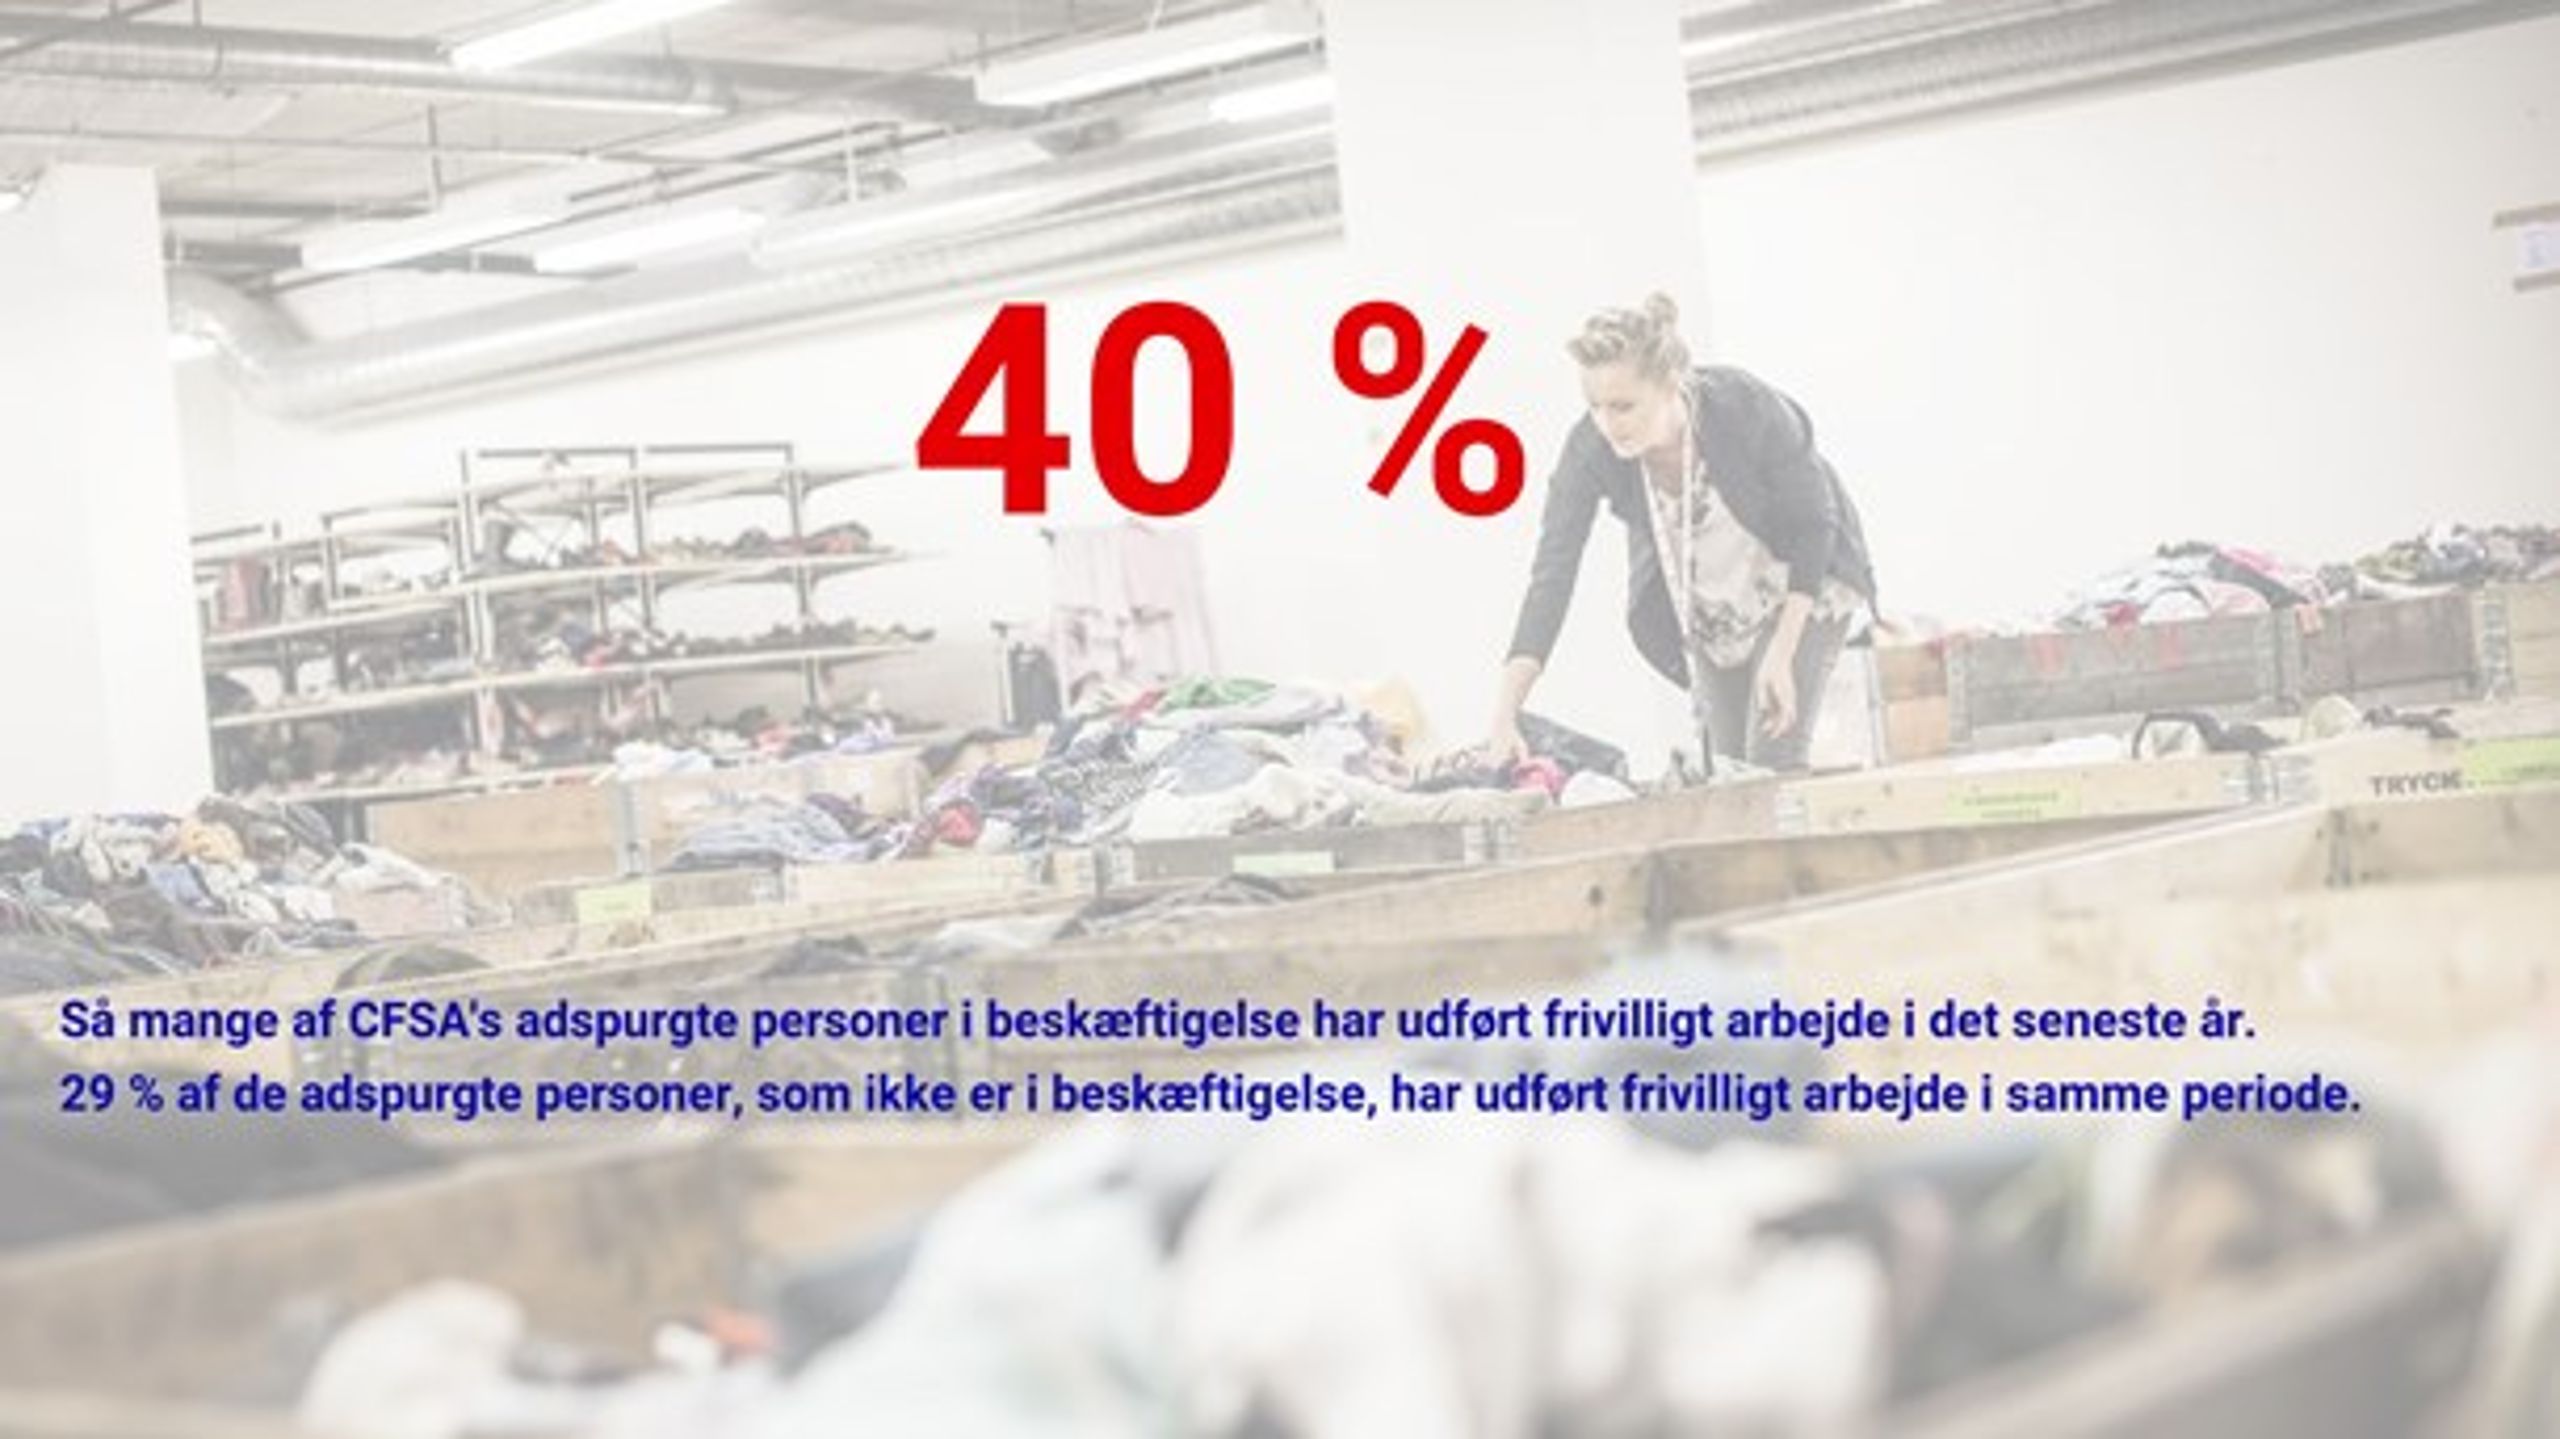 Tallene stammer fra CFSA's rapport 'Tal om frivillighed i Danmark: Frivilligrapport 2016-2018'. Disse statistikker&nbsp;er baseret på 6.431 besvarelser.